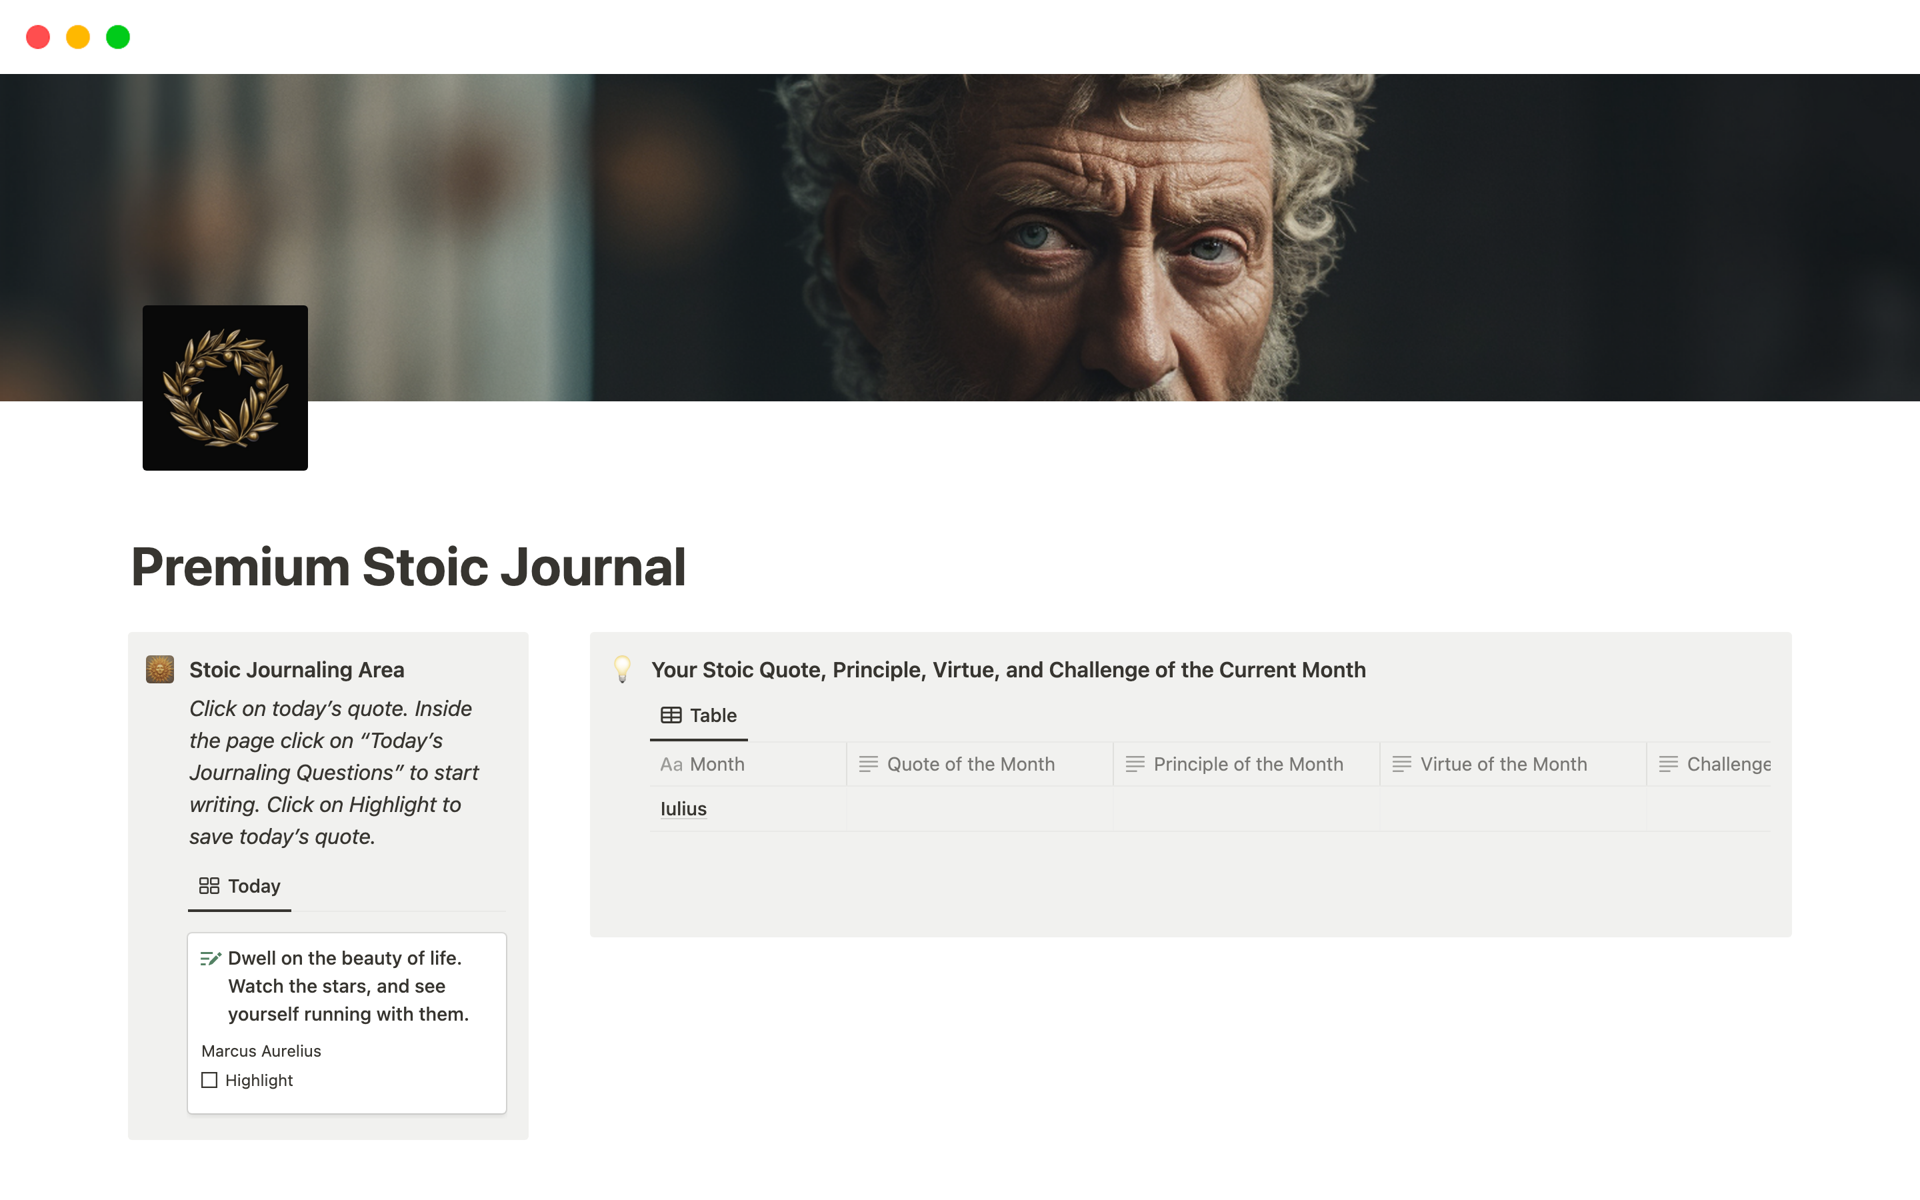 Aperçu du modèle de Premium Stoic Journal